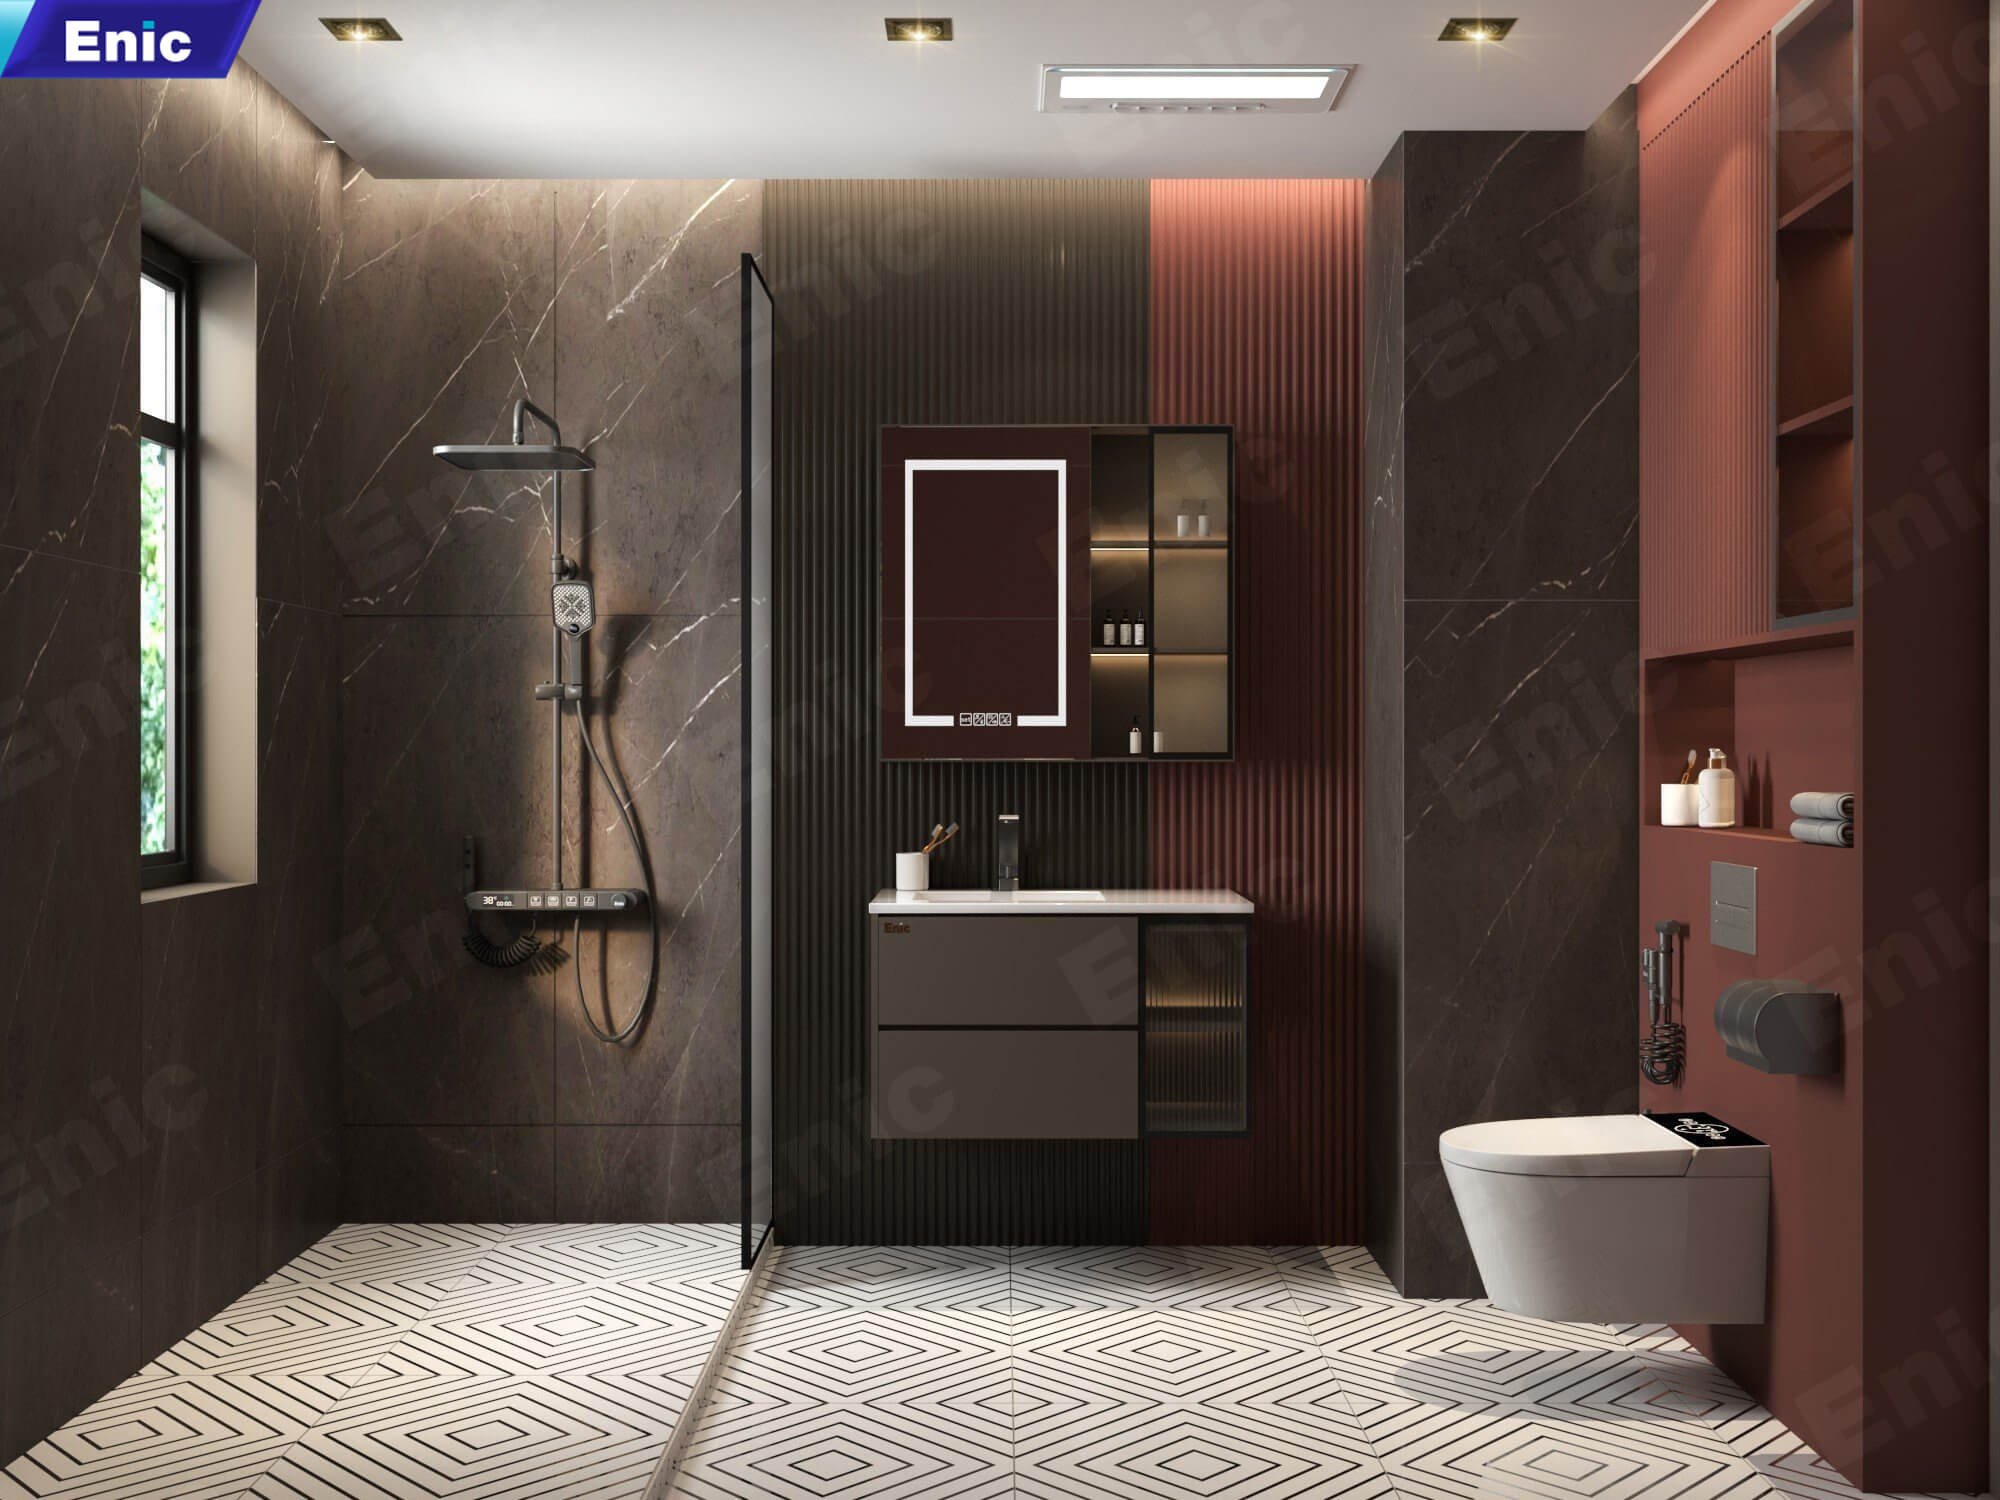 Nhà vệ sinh lát gạch hoa văn kết hợp thiết bị cao cấp, mang màu cổ điển hóa hiện đại